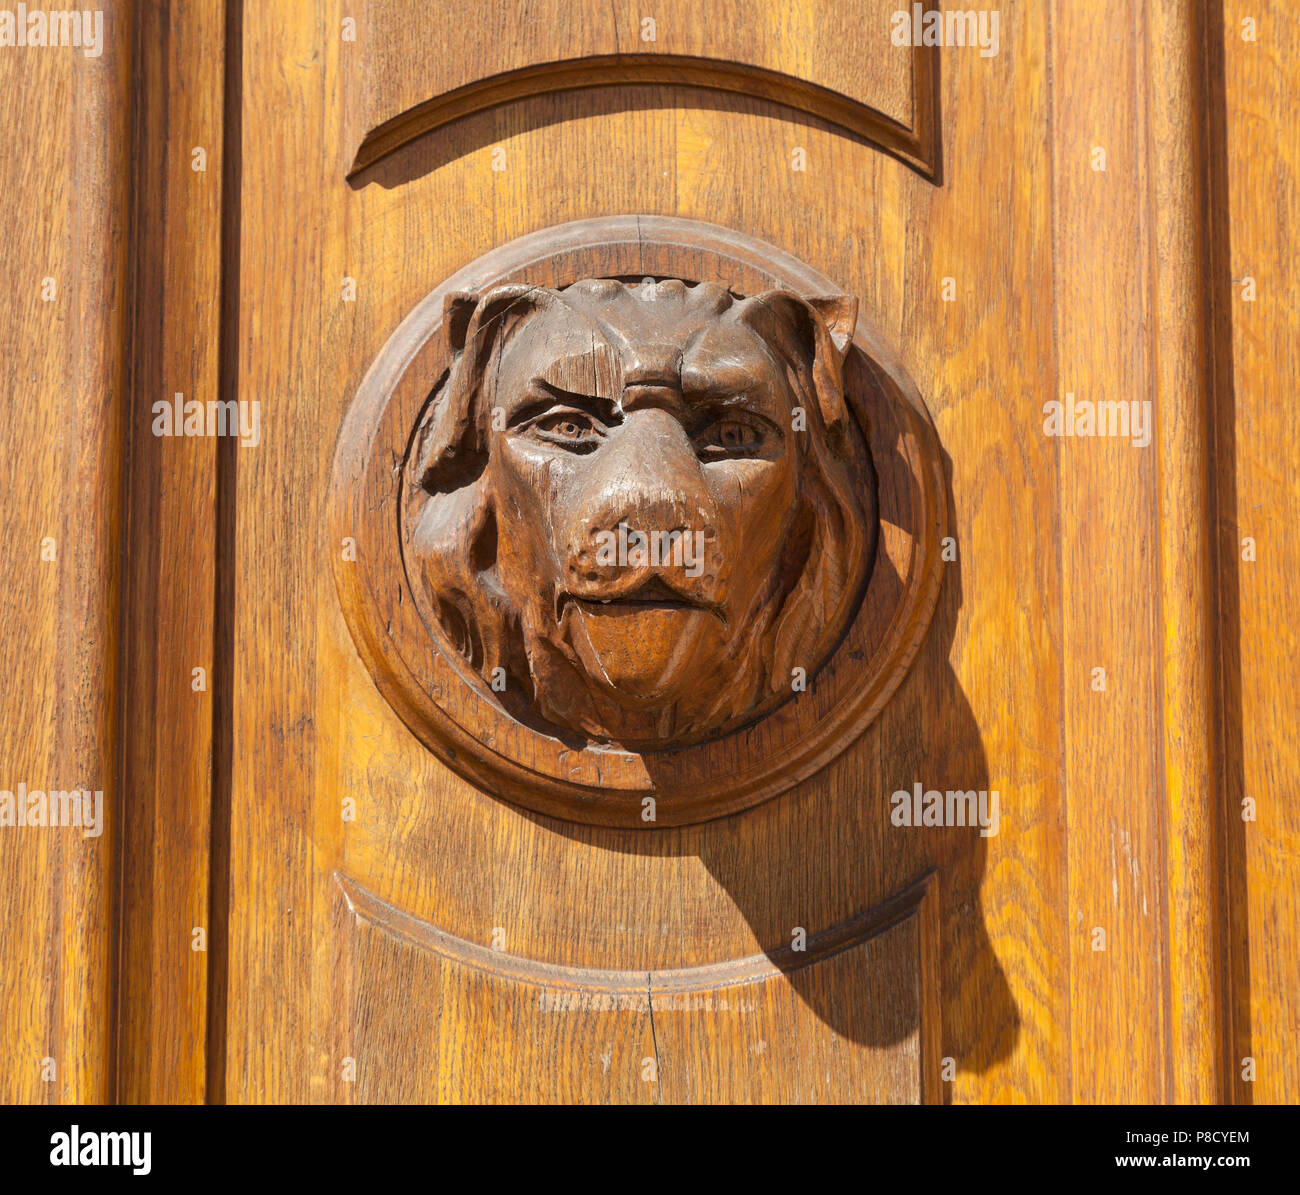 Geschnitzte Holztür Griff, Hunde Gesicht, helle Sonne Stockfoto